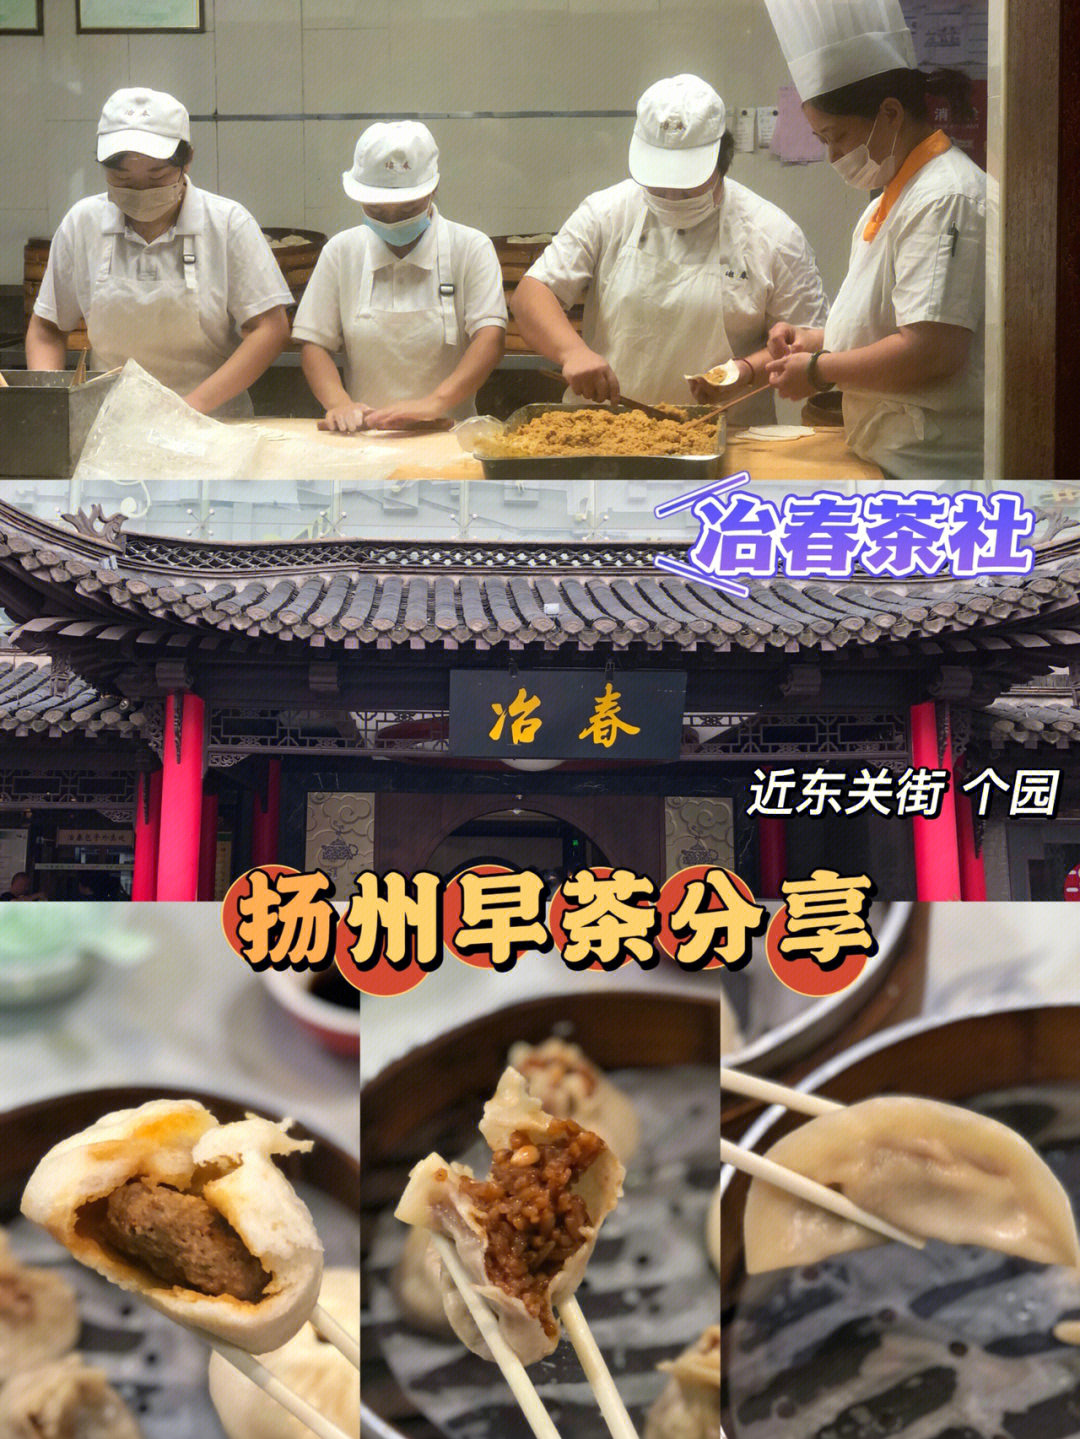 扬州冶春菜单图片